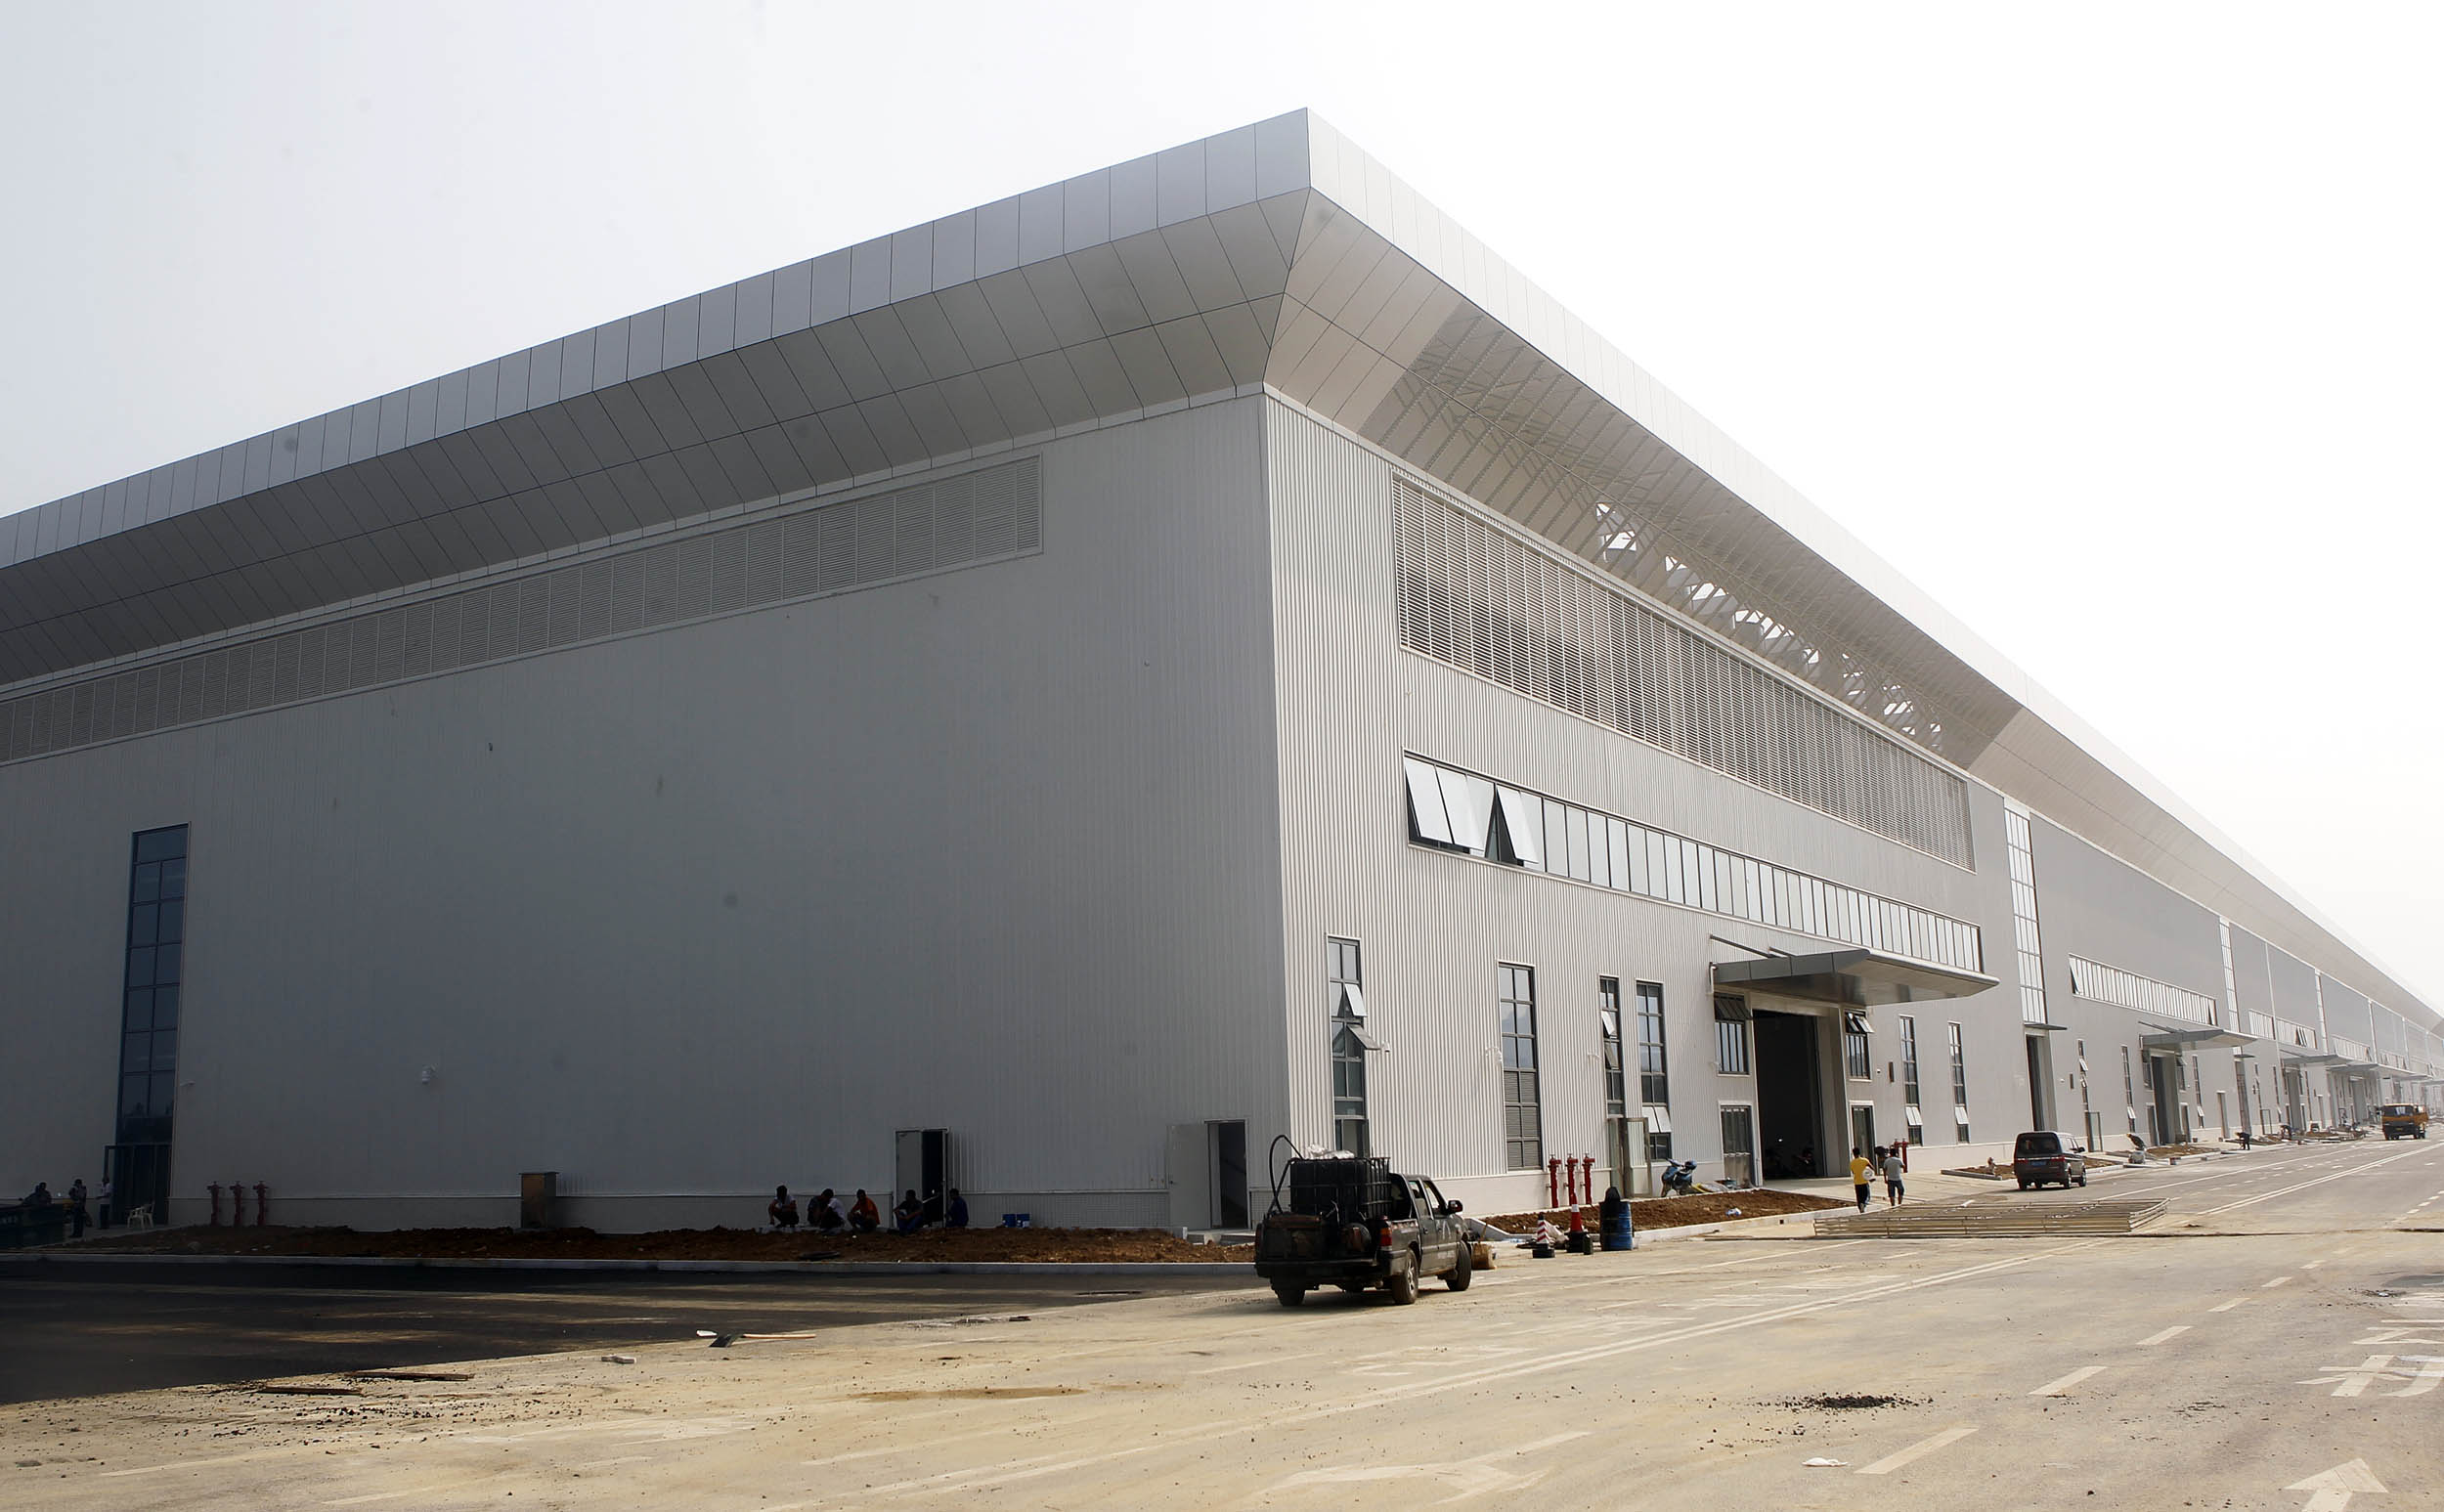 珠海航展新建主展馆通过竣工验收 面积扩至7万